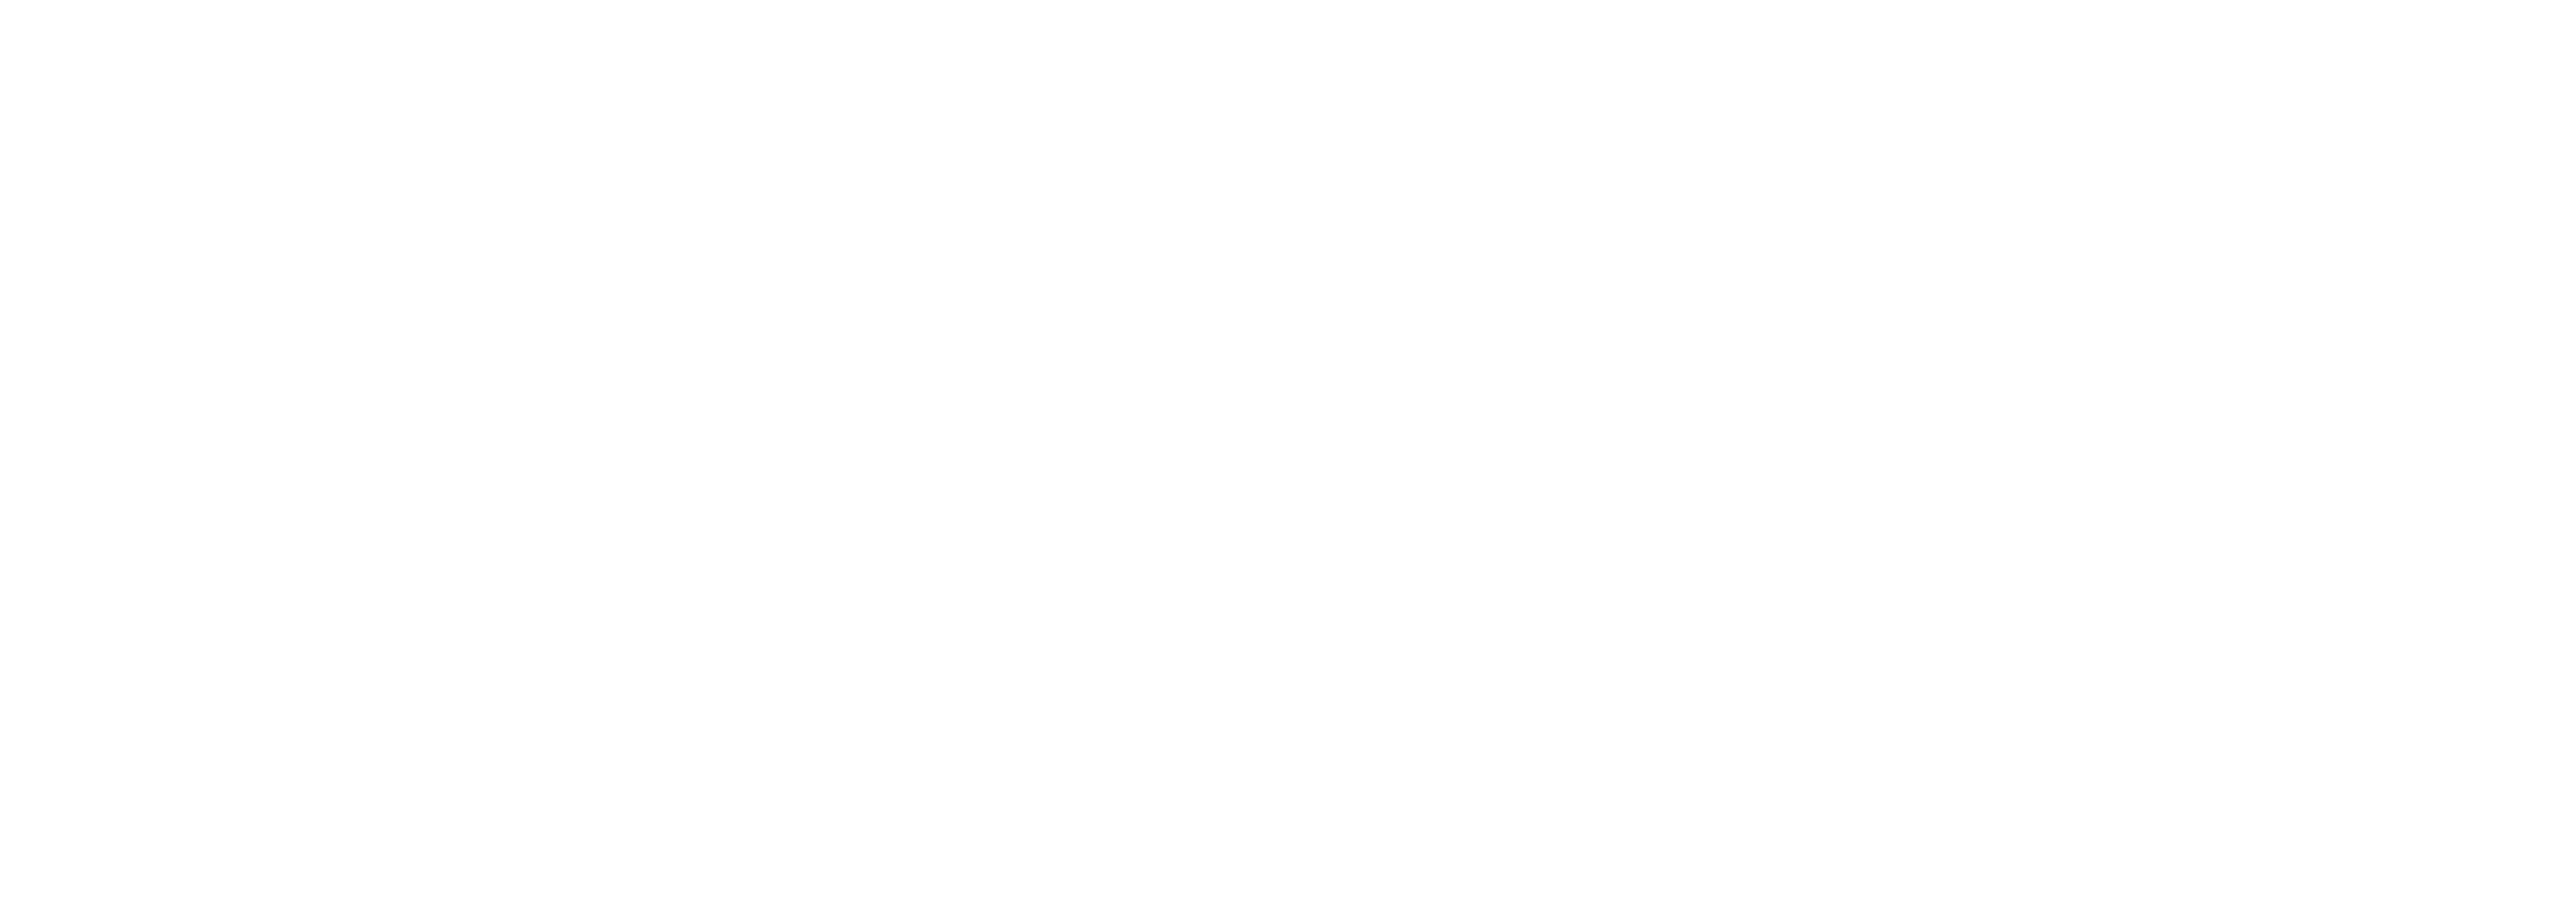 NecroRaisers Rocket League